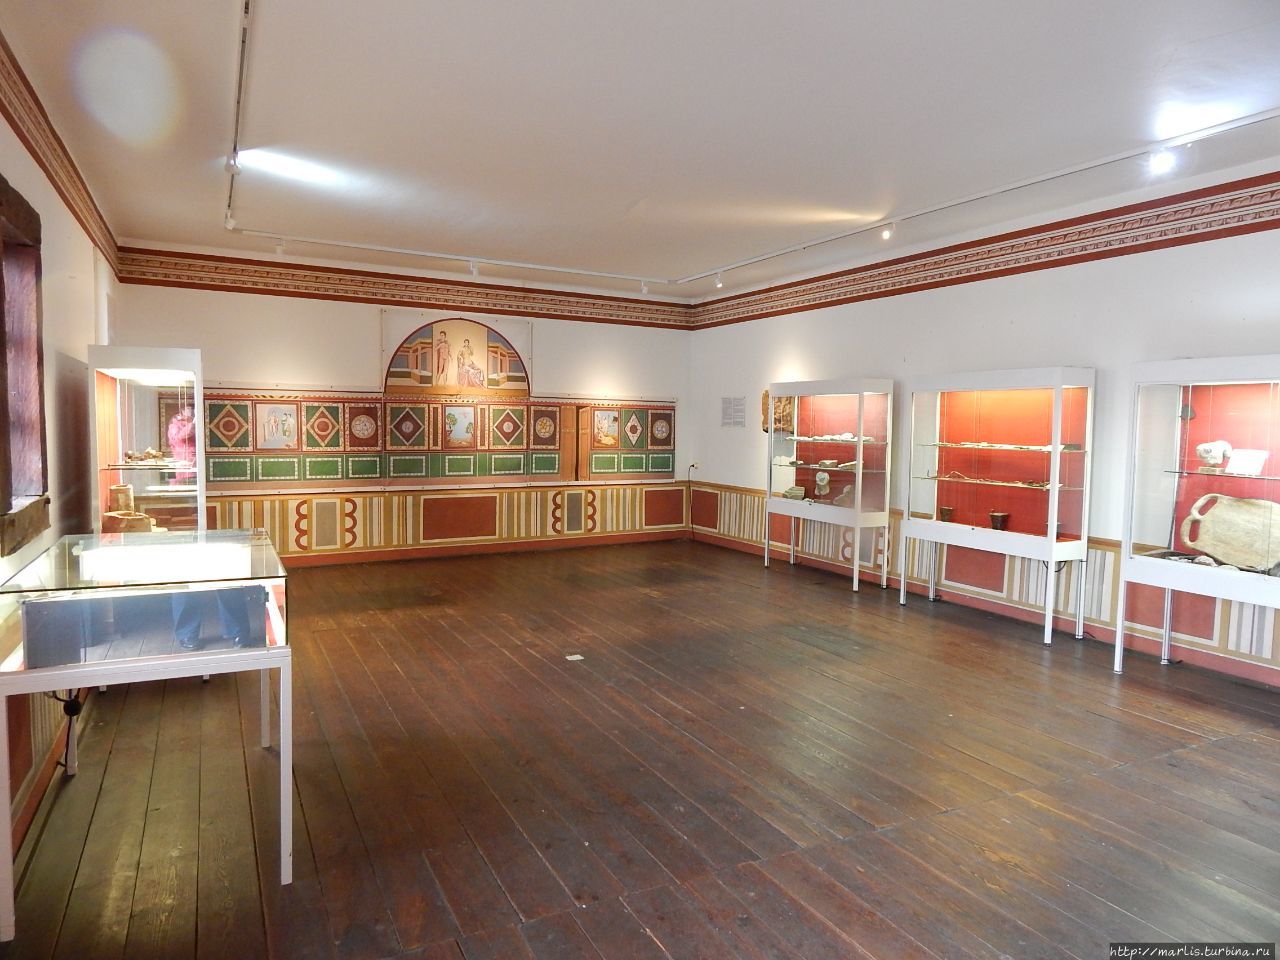 Древнеримское поселение и музей в Шварценакере Хомбург, Германия